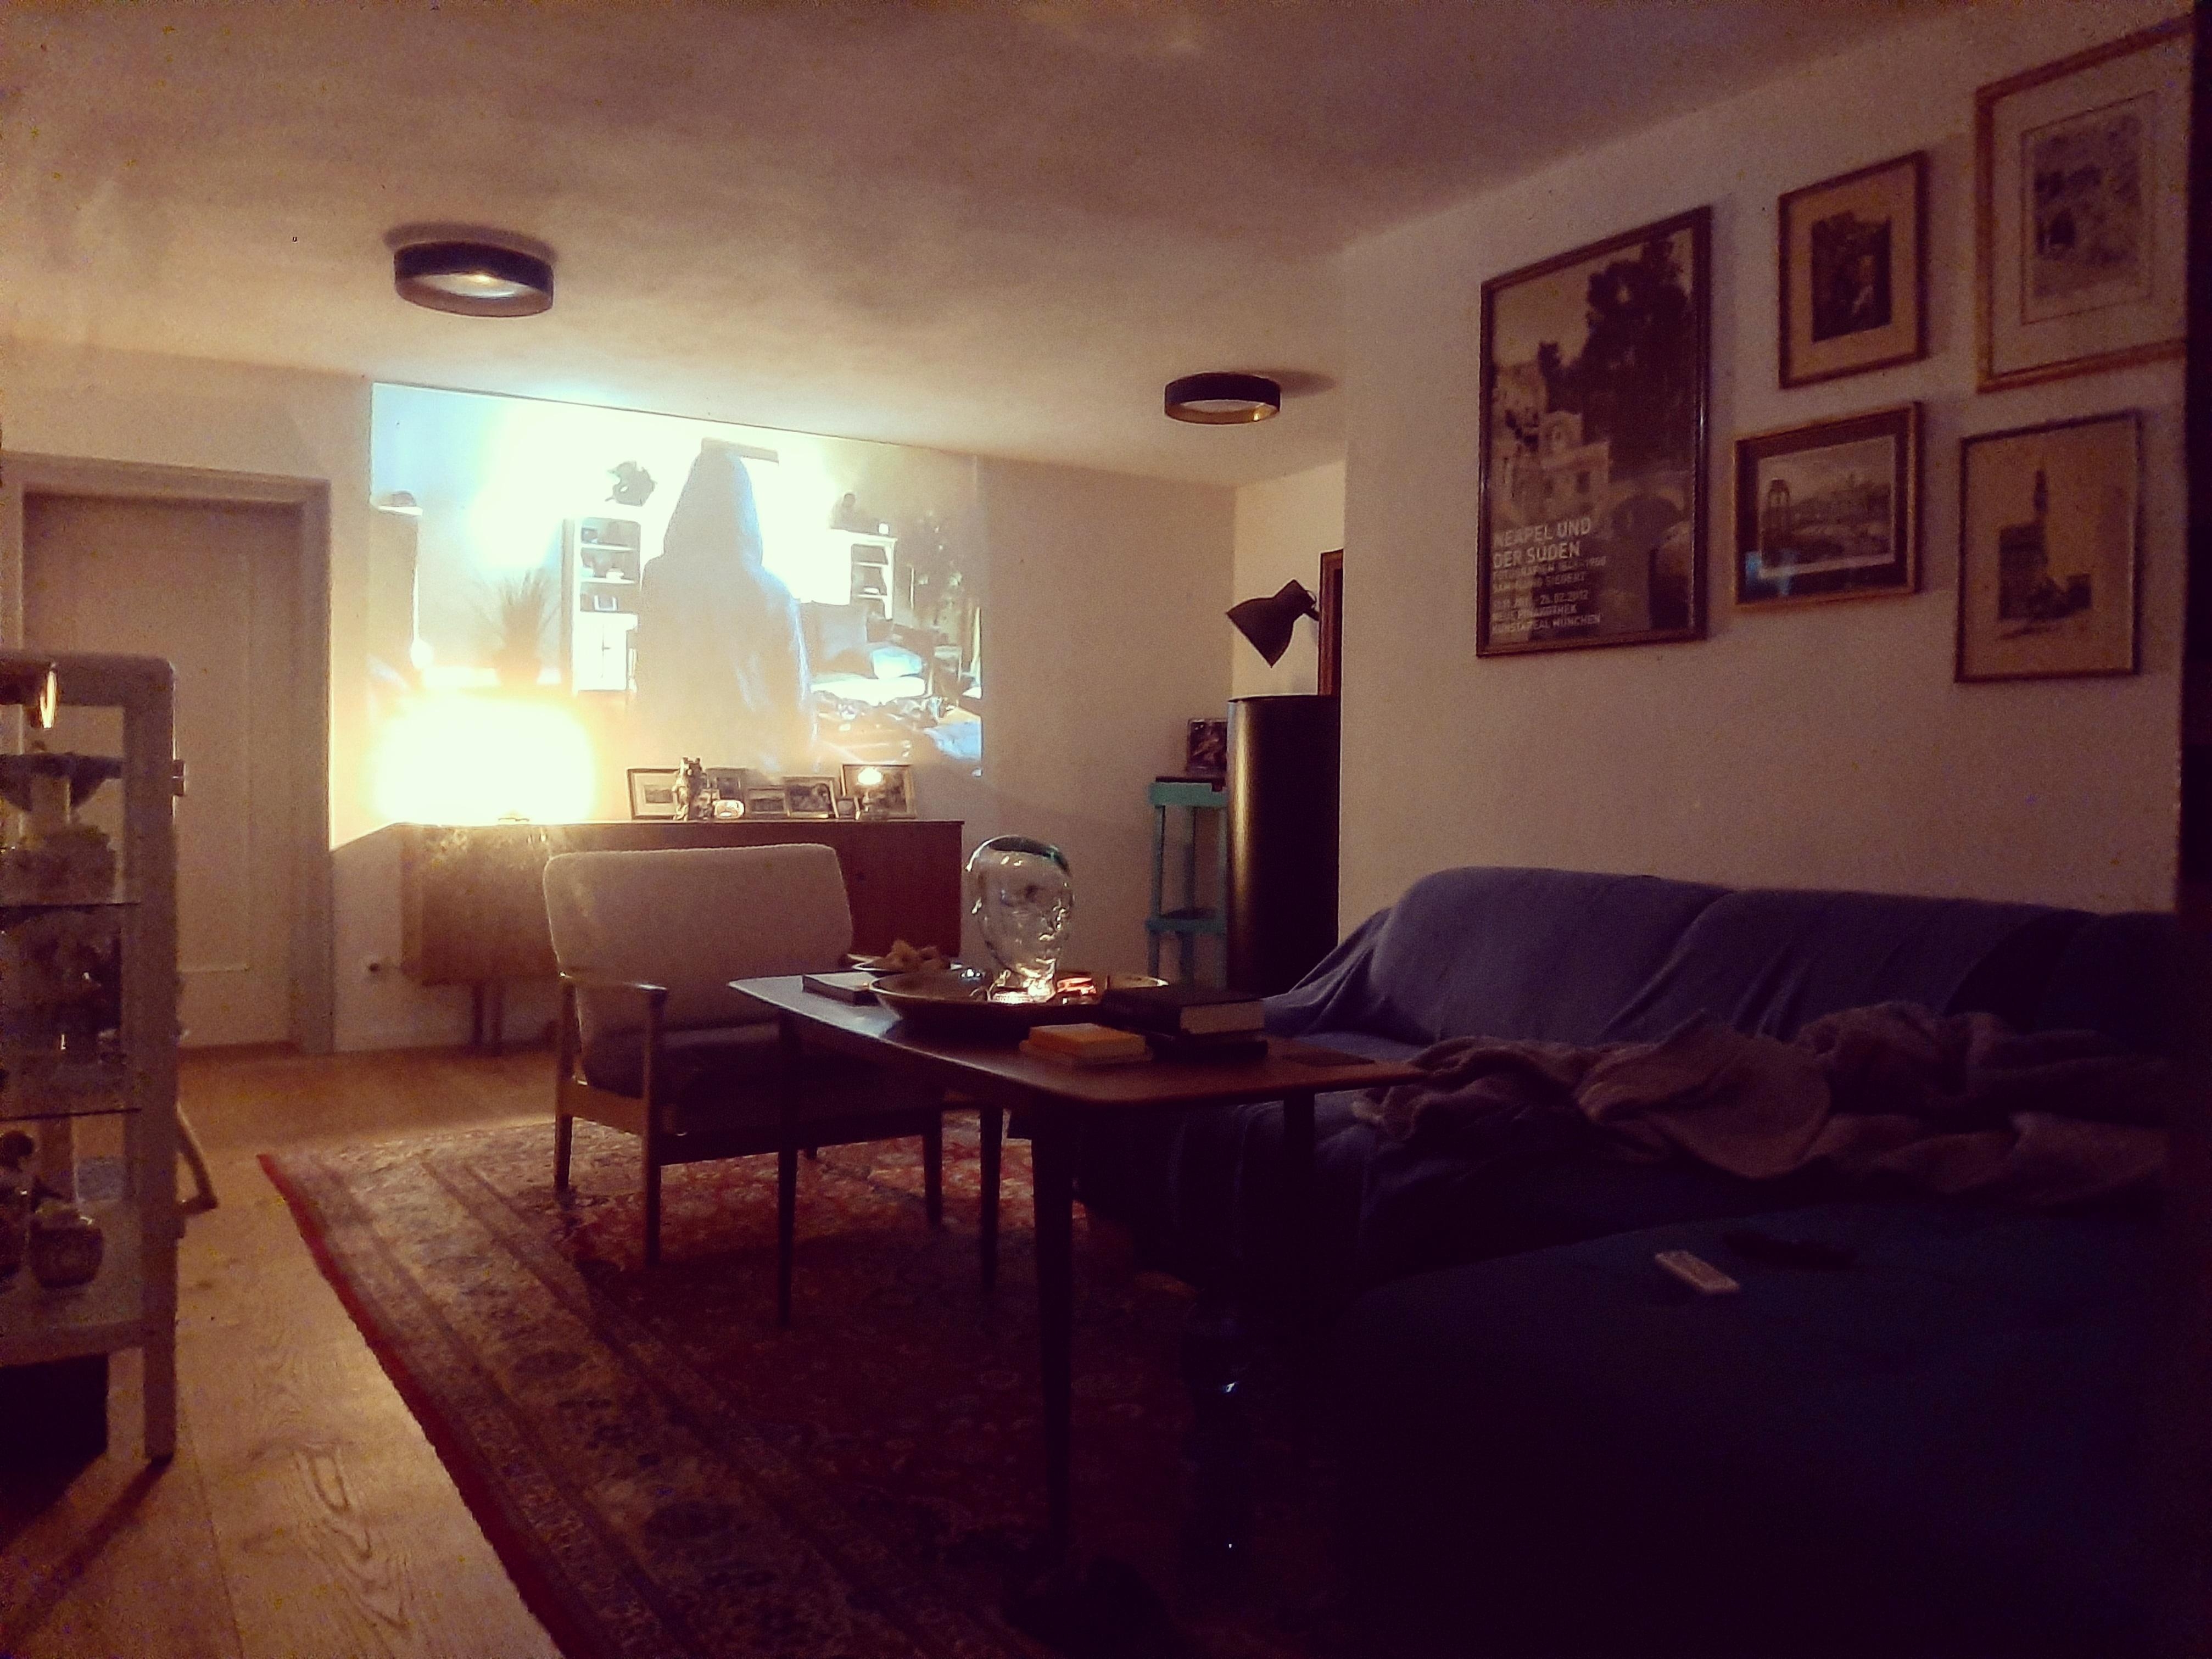 Lieblingsplatz. #livingroom #beamerliebe #gallerywall #danishvintage